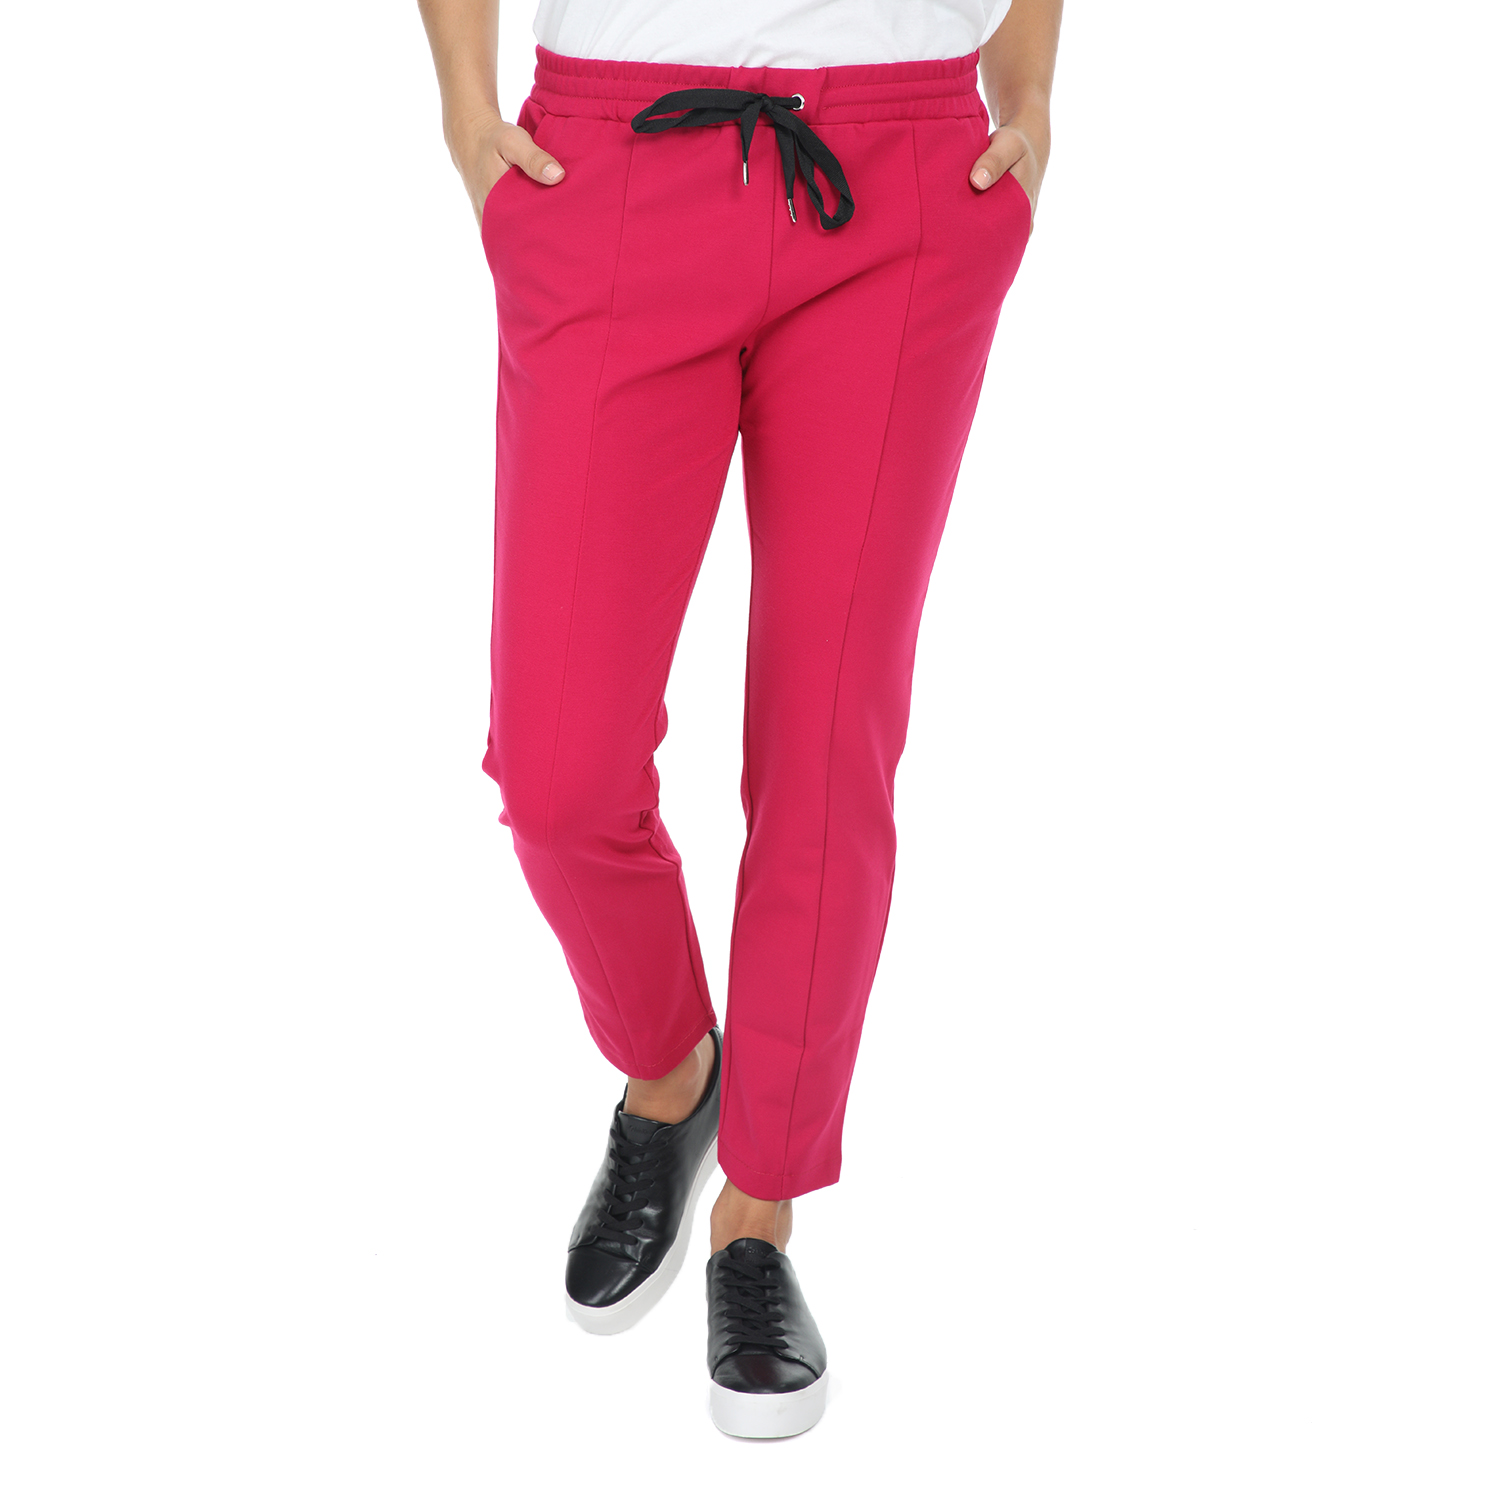 Γυναικεία/Ρούχα/Παντελόνια/Φόρμες IMPERIAL - Γυναικείο παντελόνι φόρμας IMPERIAL ροζ